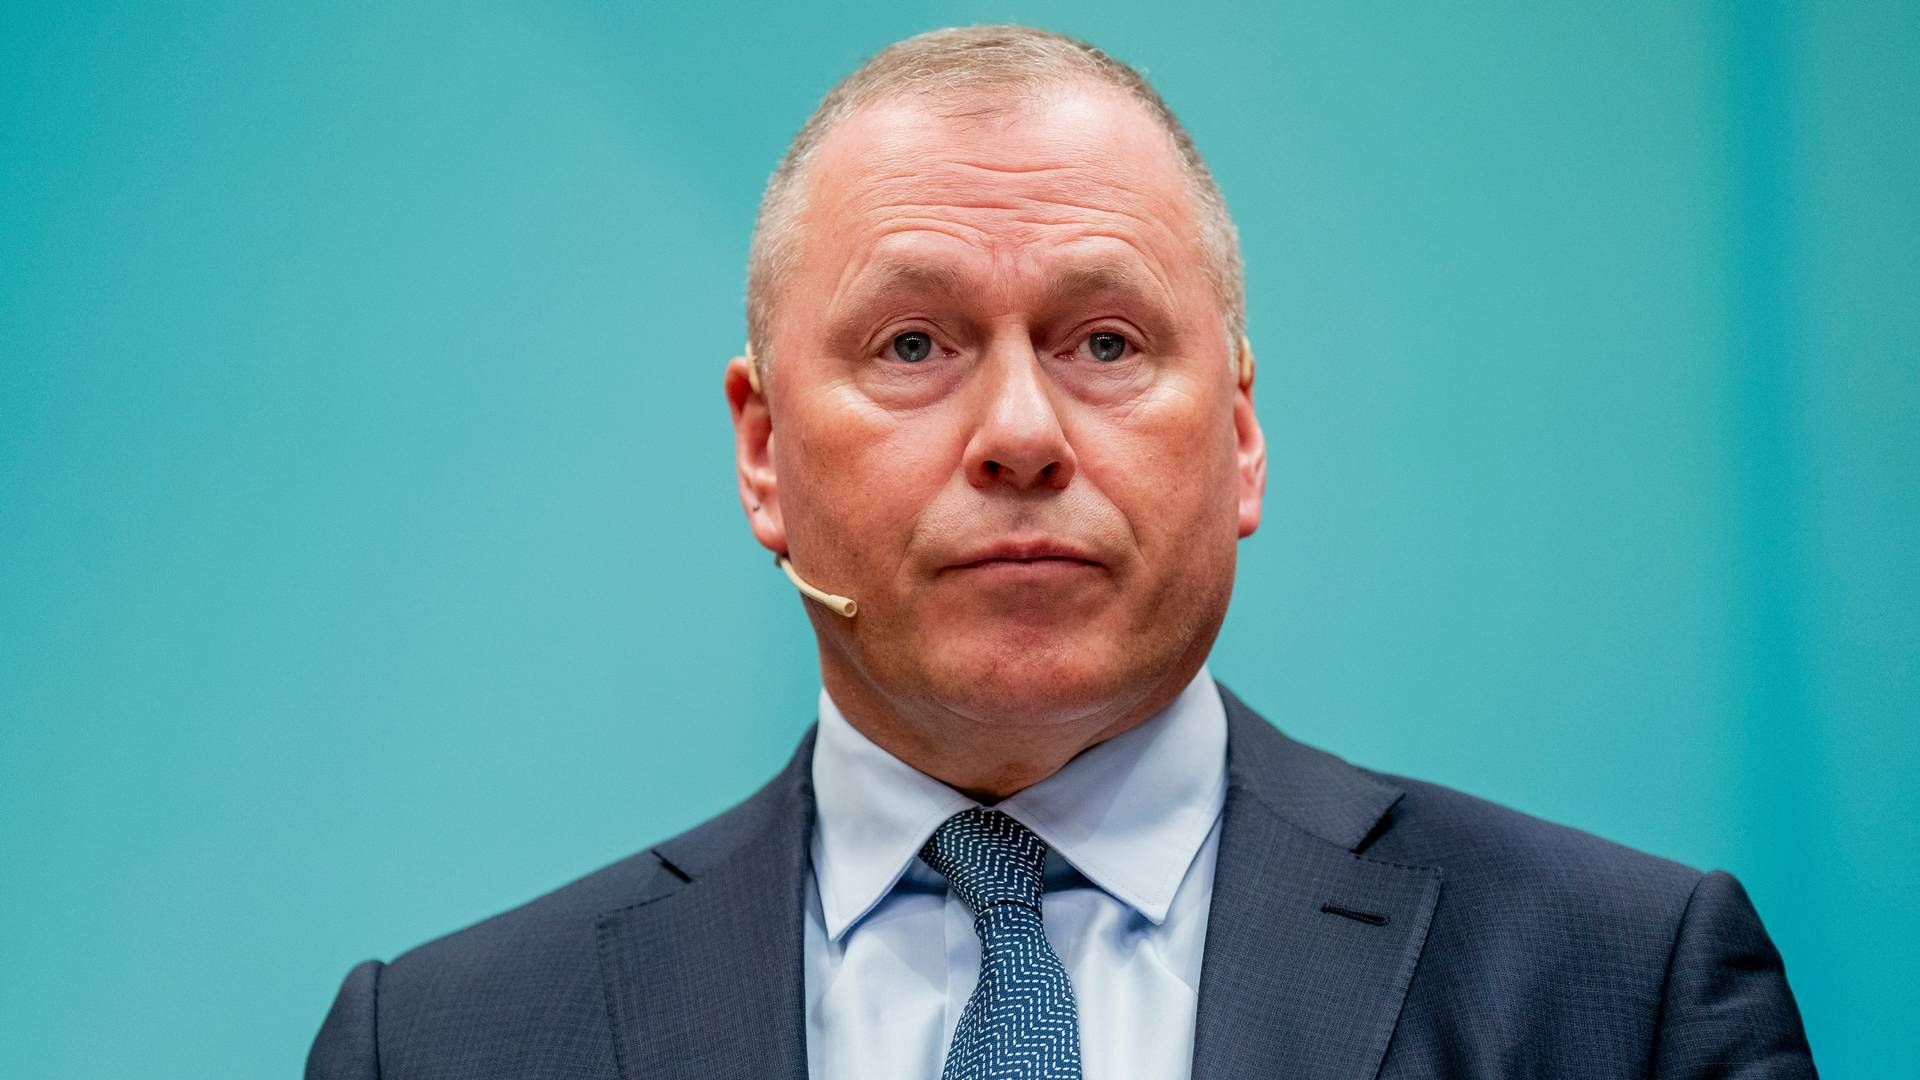 Oljefondet og administrerende direktør Nicolai Tangen selger seg stadig ut av selskaper de mener det er for høy risiko å drive i. | Foto: Fredrik Varfjell / NTB